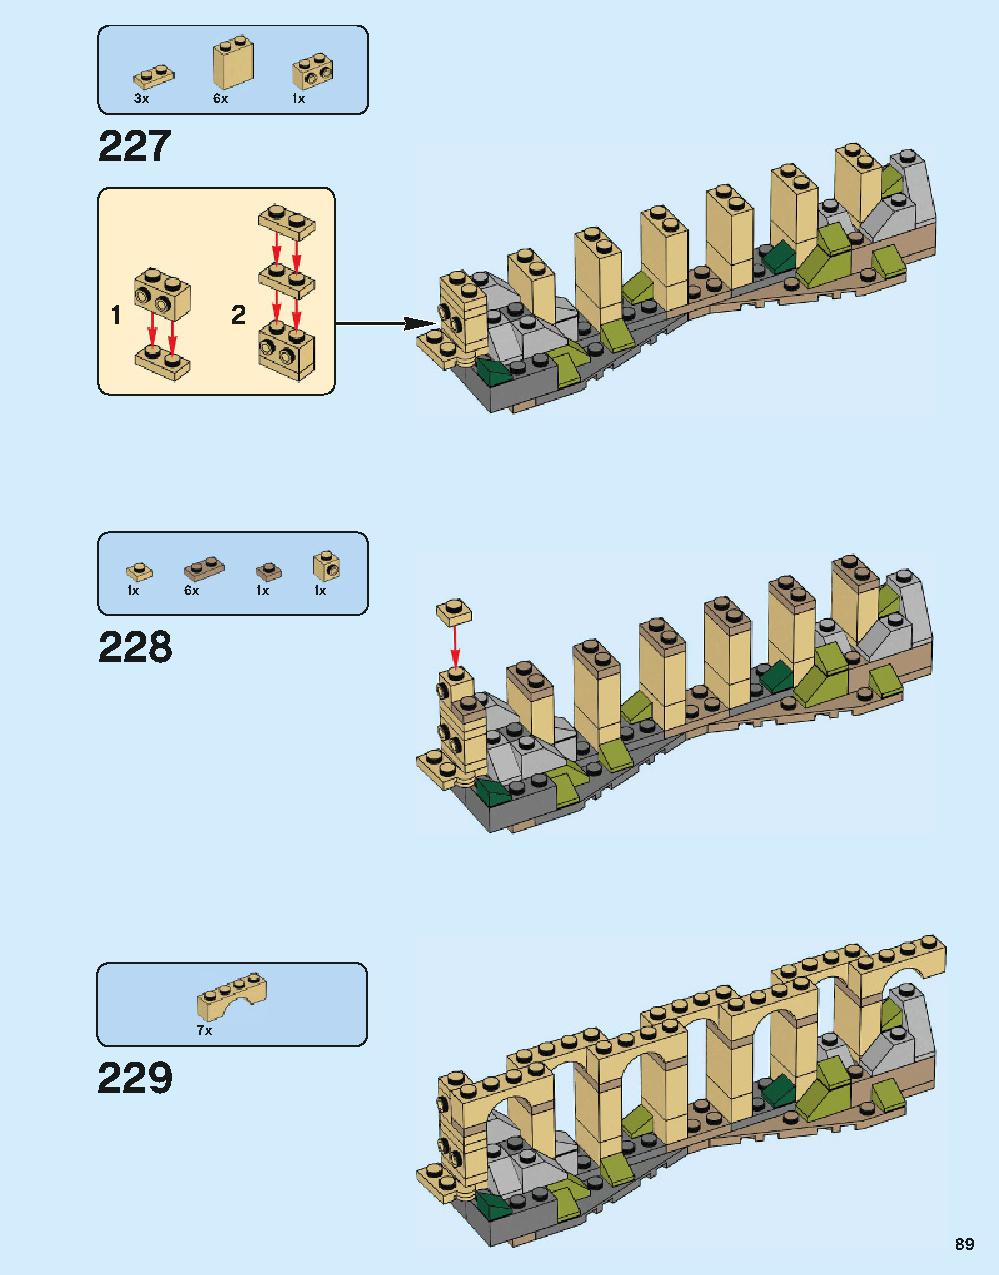 ホグワーツ城 71043 レゴの商品情報 レゴの説明書・組立方法 89 page